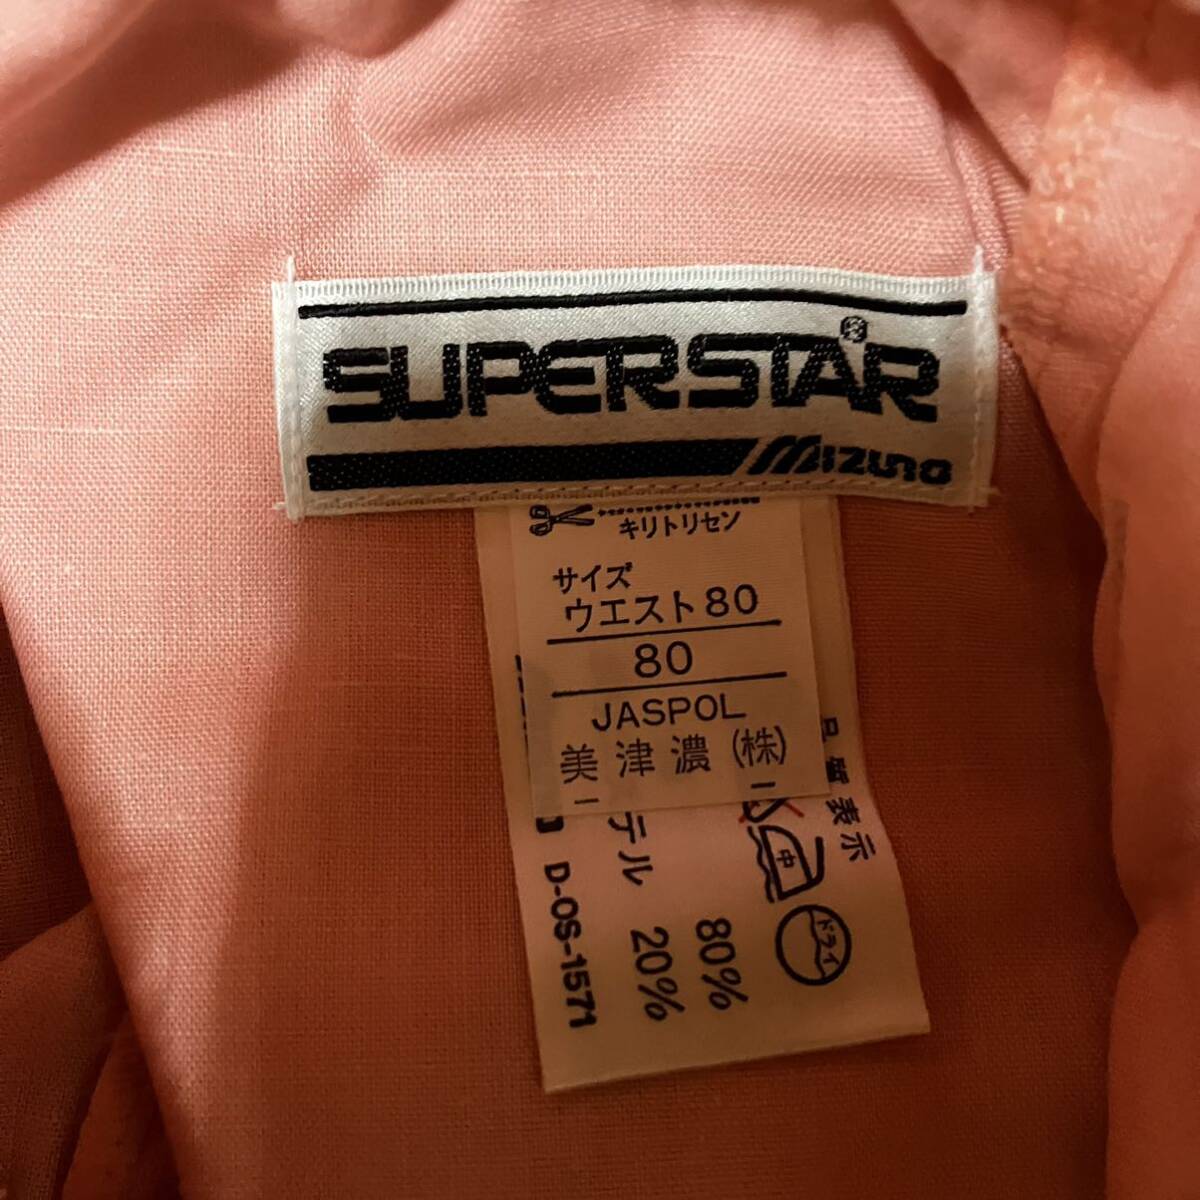 MIZUNO superstar 58RM-4764 L размер бег брюки Short Ran хлеб с биркой Япония стандартный товар подлинная вещь не использовался super Star Mizuno 